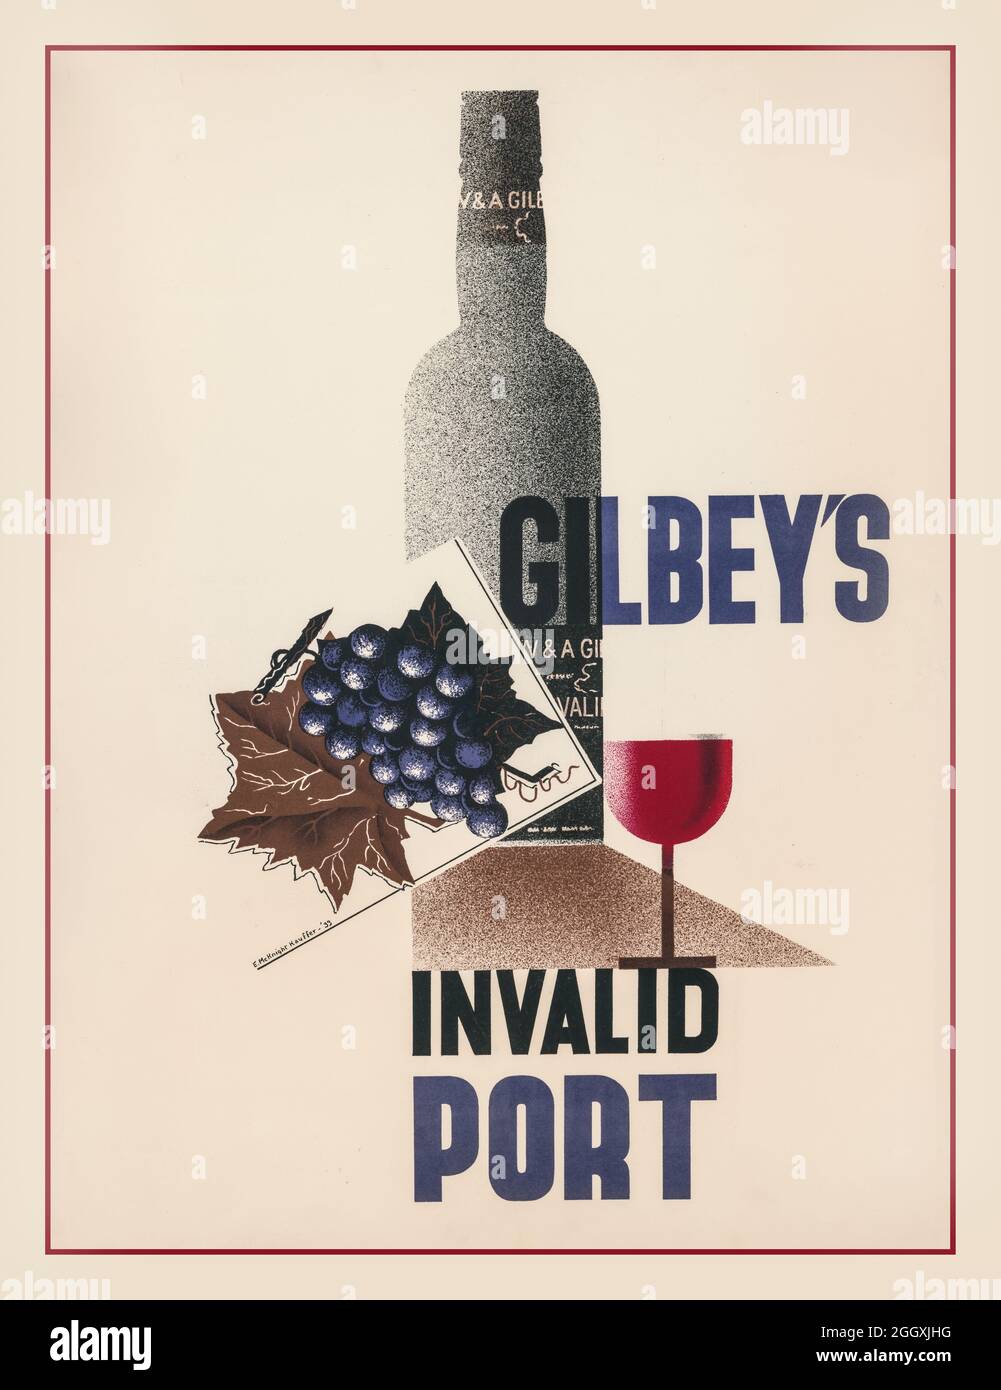 1930er Poster Lithograph Kauffer, E. McKnight (Edward McKnight), 1890-1954, Künstler Erstellungsdatum: [London] : W. & A. Gilbey Ltd., [1933]. Medium: 1 Print : Lithographie ;(Posterformat) das Poster zeigt eine Flasche Portwein, ein Glas Portwein und ein paar Trauben. Der Londoner Weinhändler Gilbey's hatte eine Marke entwickelt, die als Gilbey's Invalid Port bekannt war und für die er belebende und stärkende Eigenschaften beanspruchte. ... Der Wein wurde von Croft geliefert, im Fass geliefert und von Gilbey's in London abgefüllt. Stockfoto